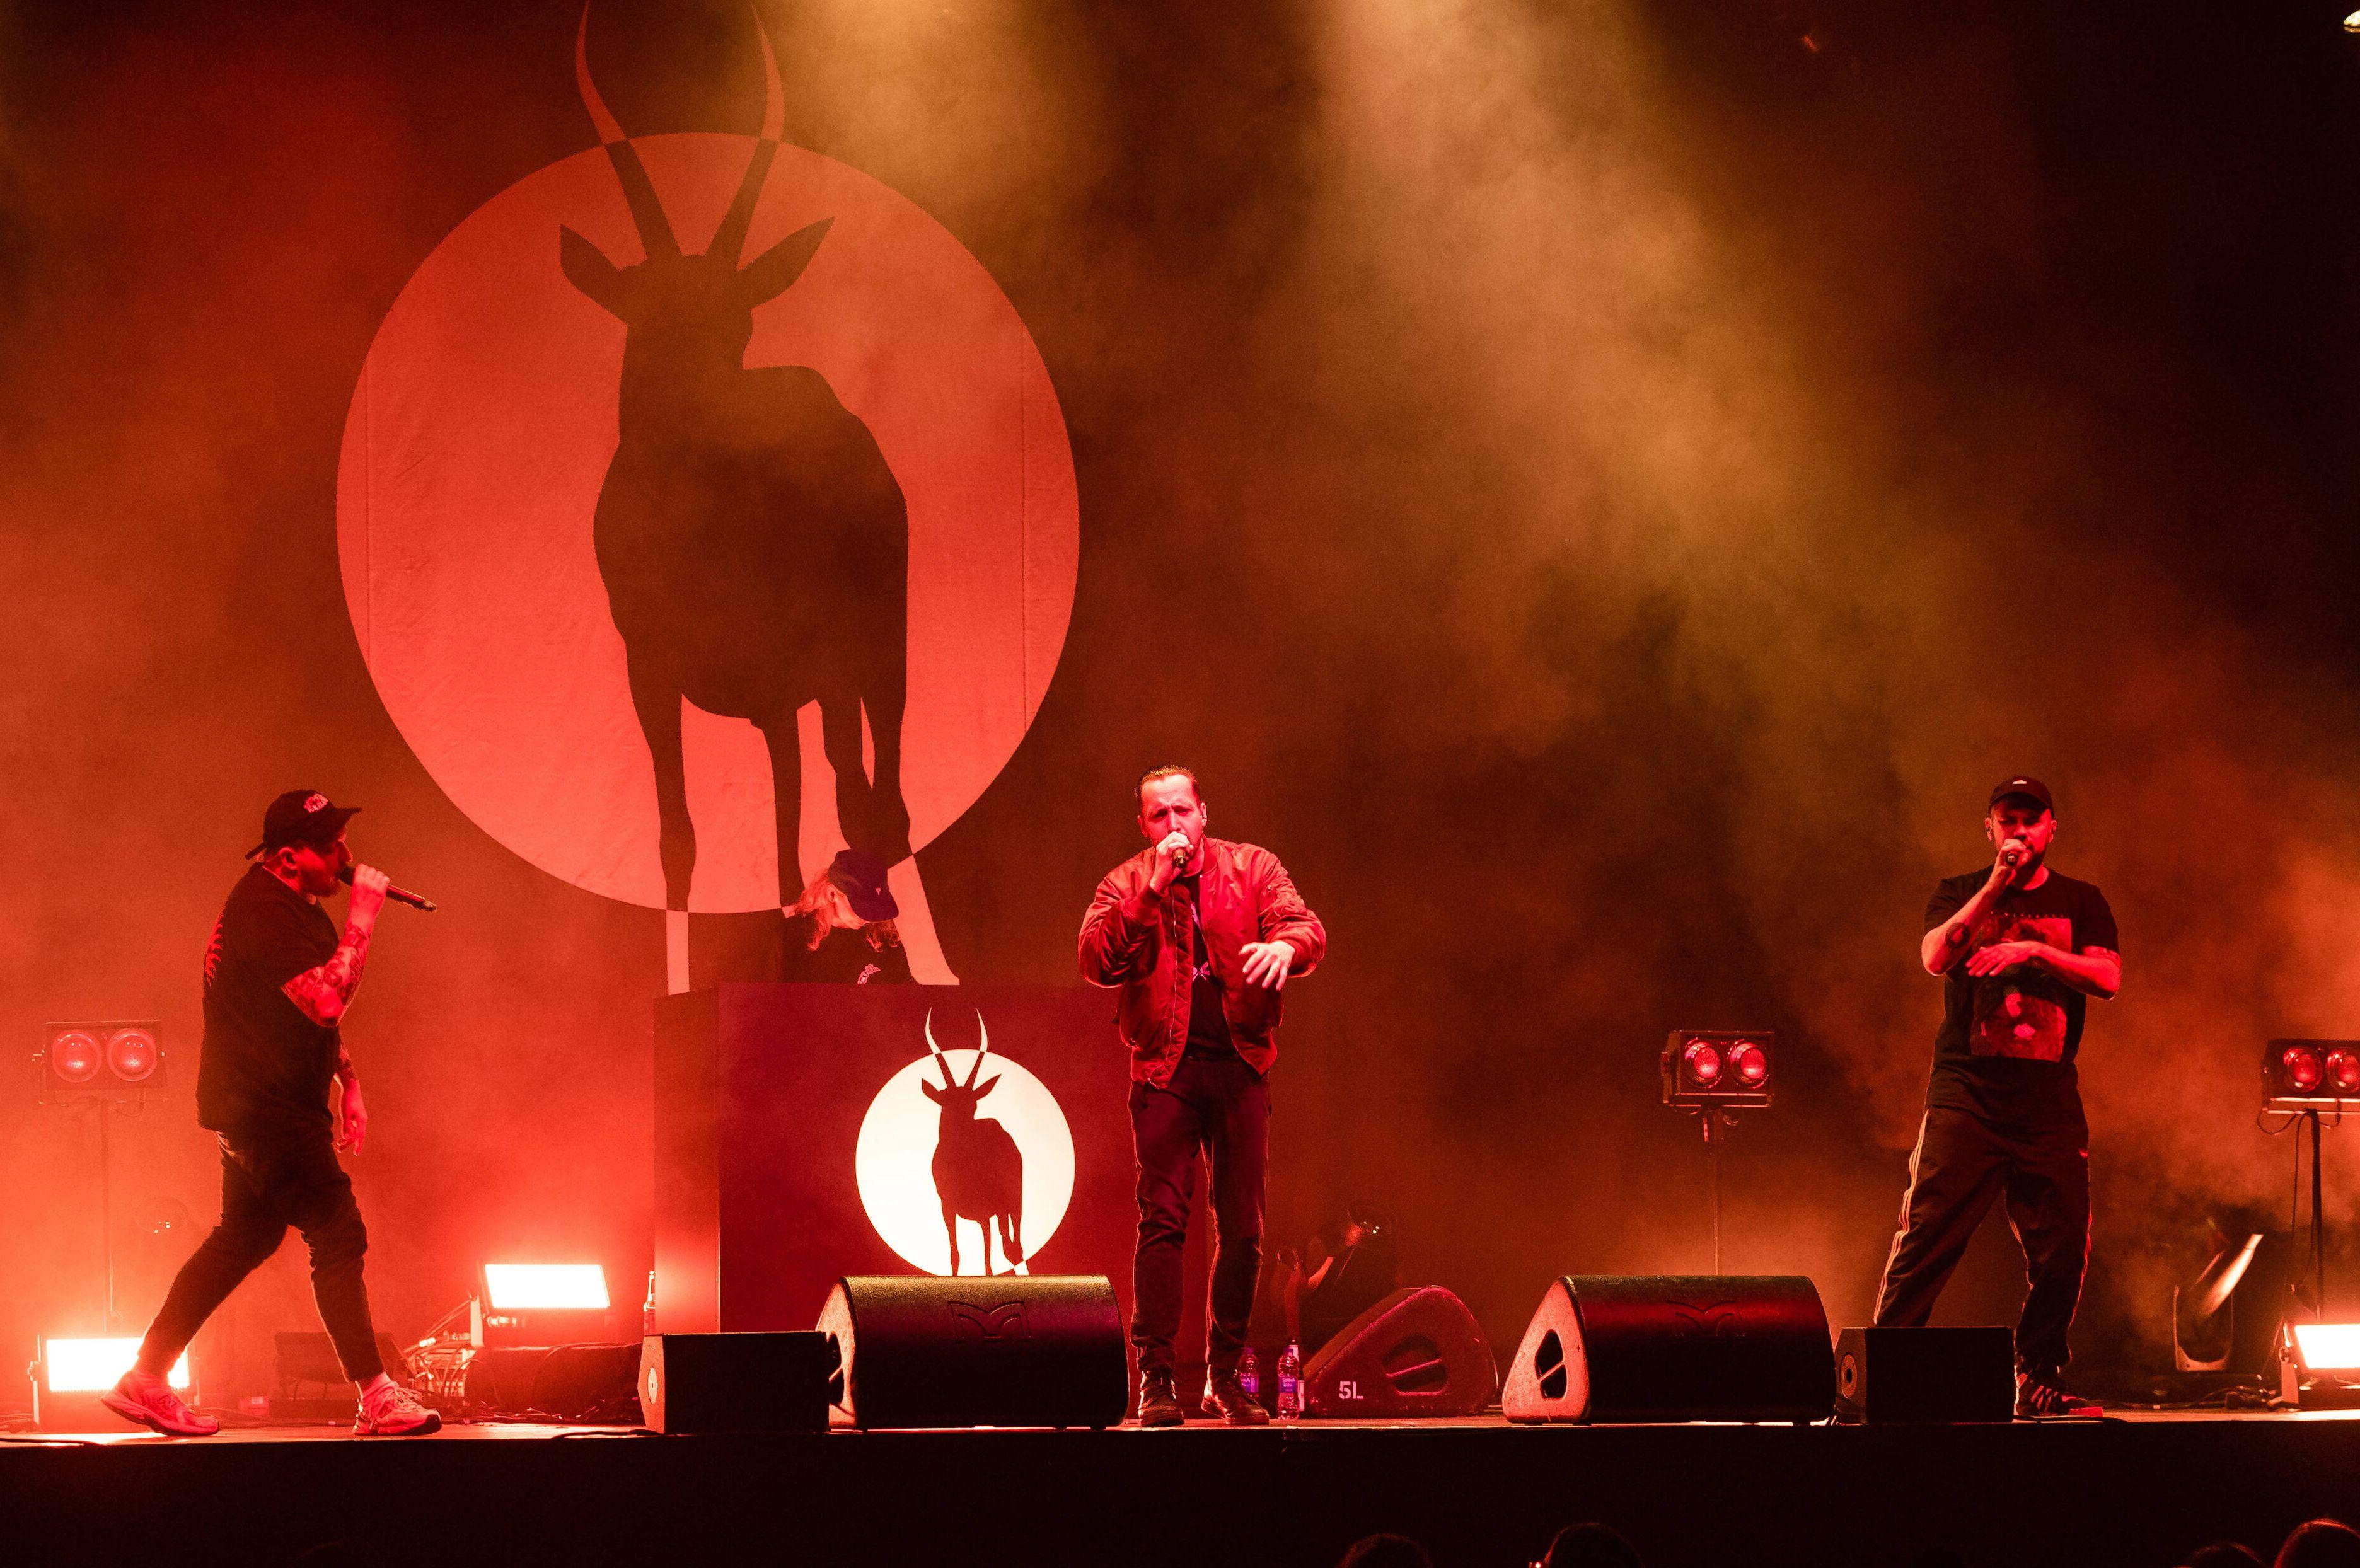 Ein Konzert der Antilopen Gang in der Berliner Columbiahalle, Aufnahme vom 25. August 2021.